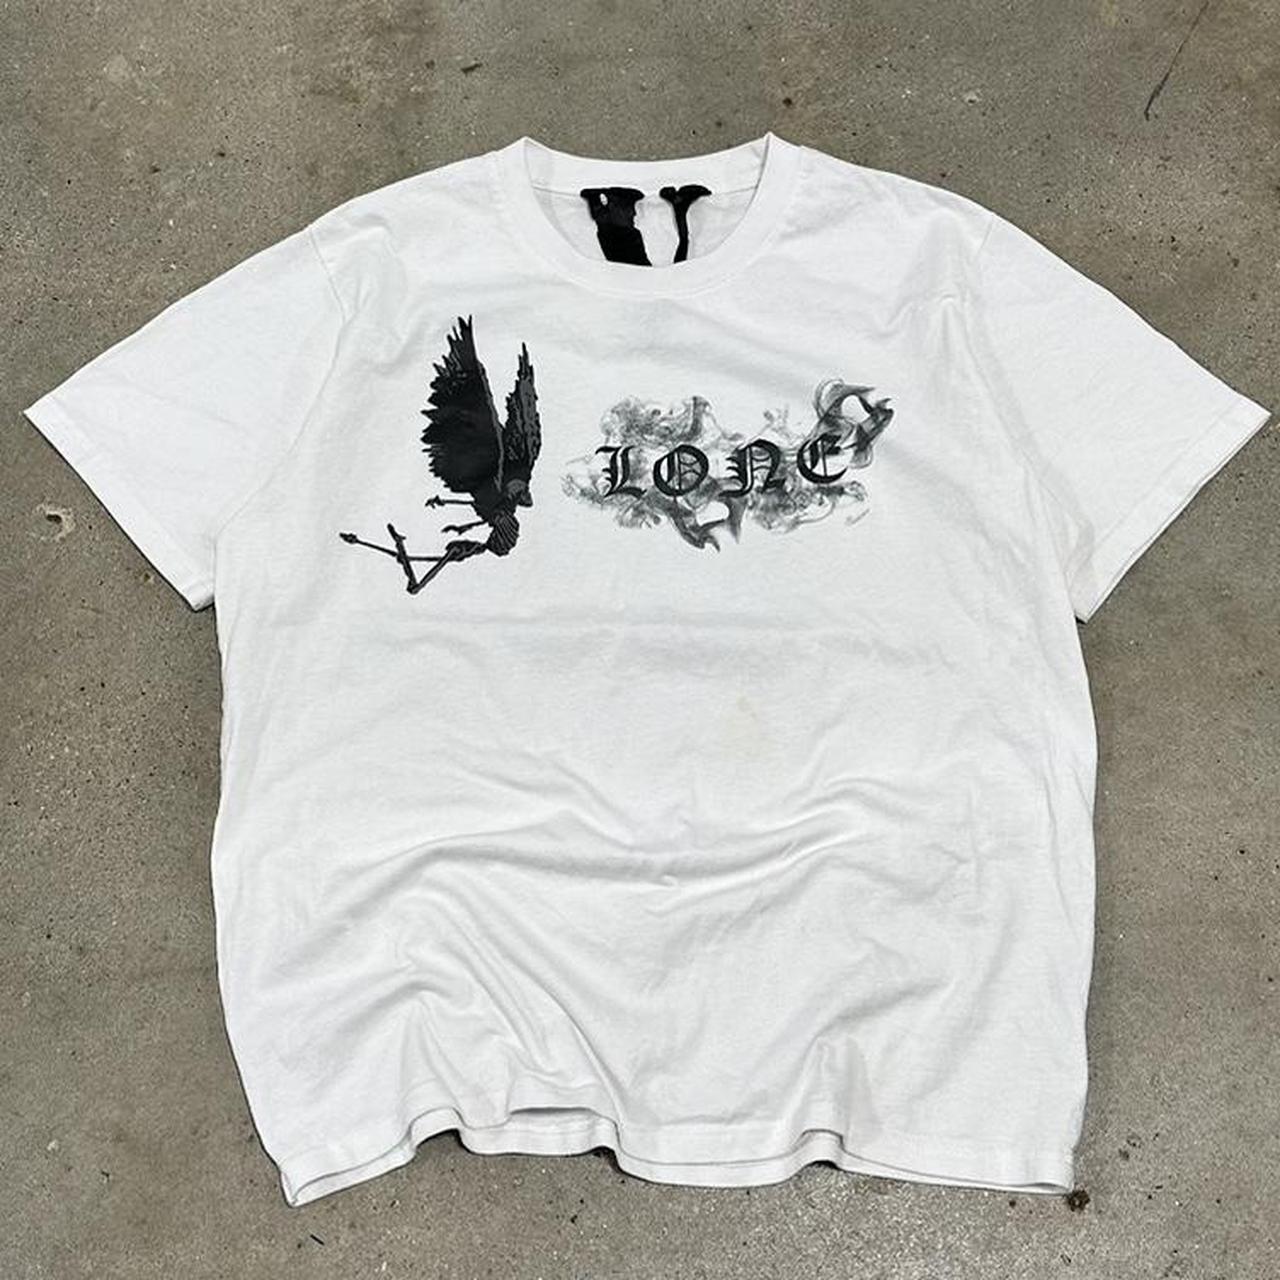 Modern Vlone Bird Spell Out T-shirt Size L... - Depop